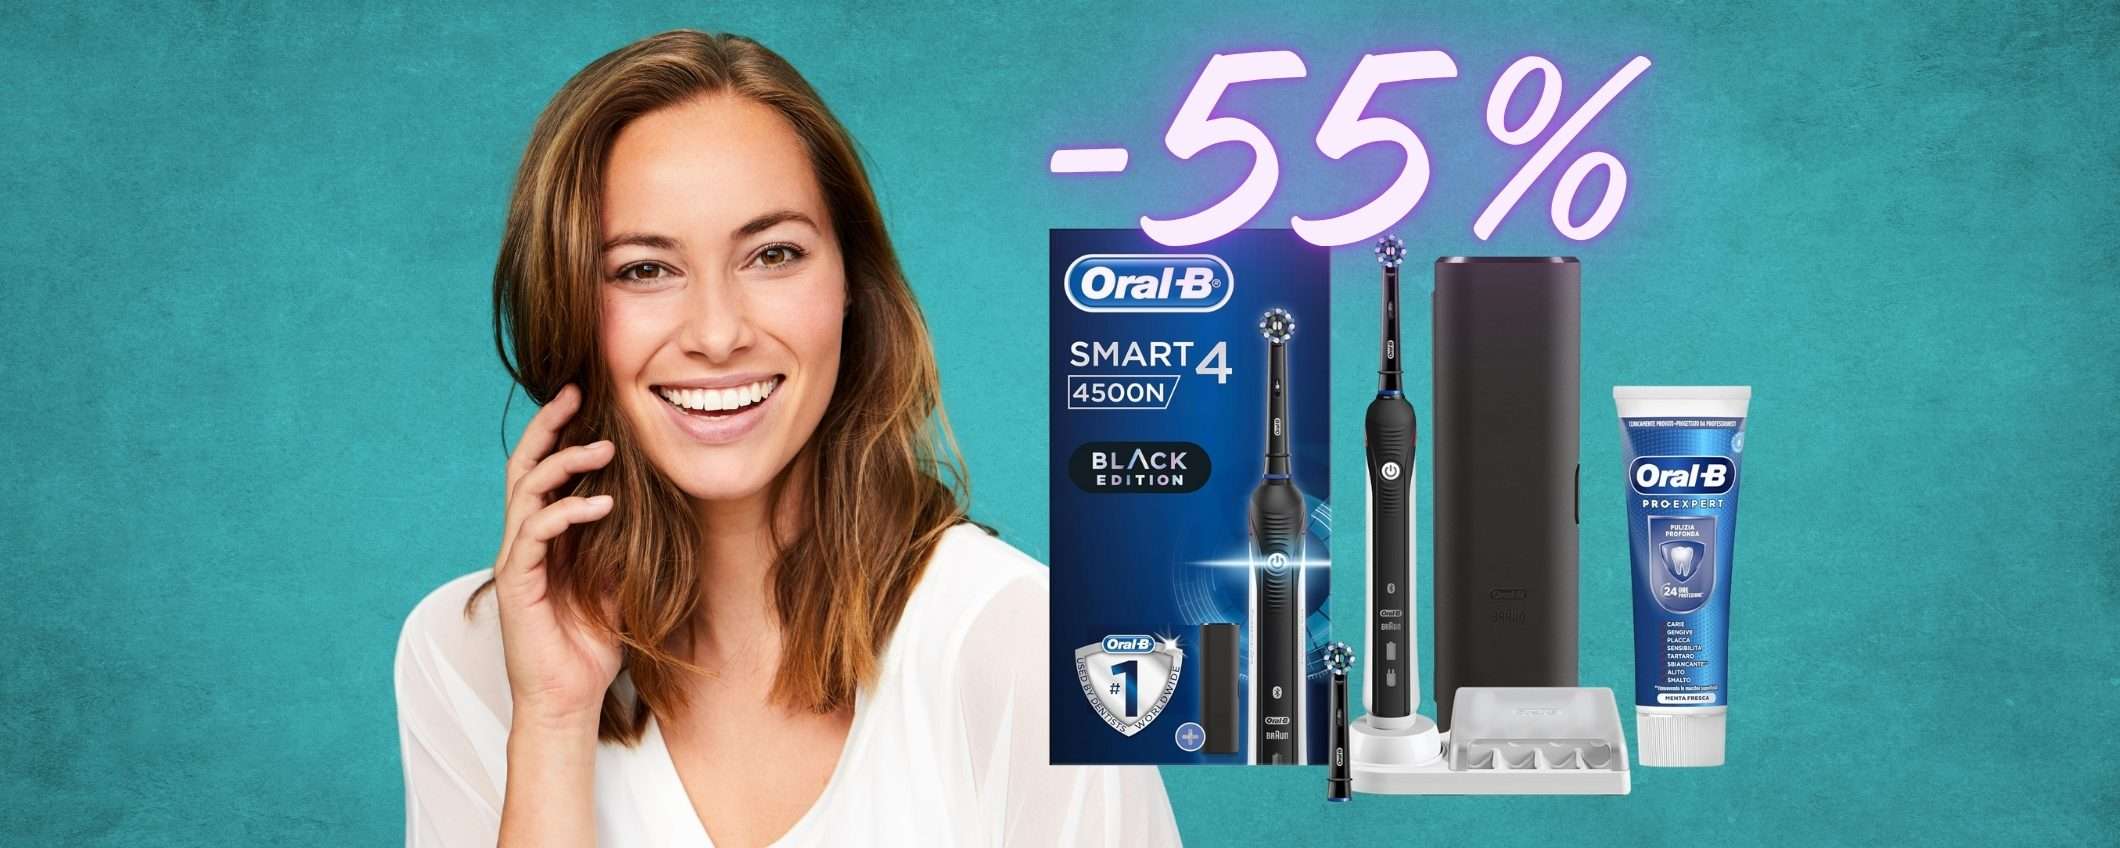 MIGLIORE spazzolino elettrico senza svenarsi? VINCE Oral-B Smart 4